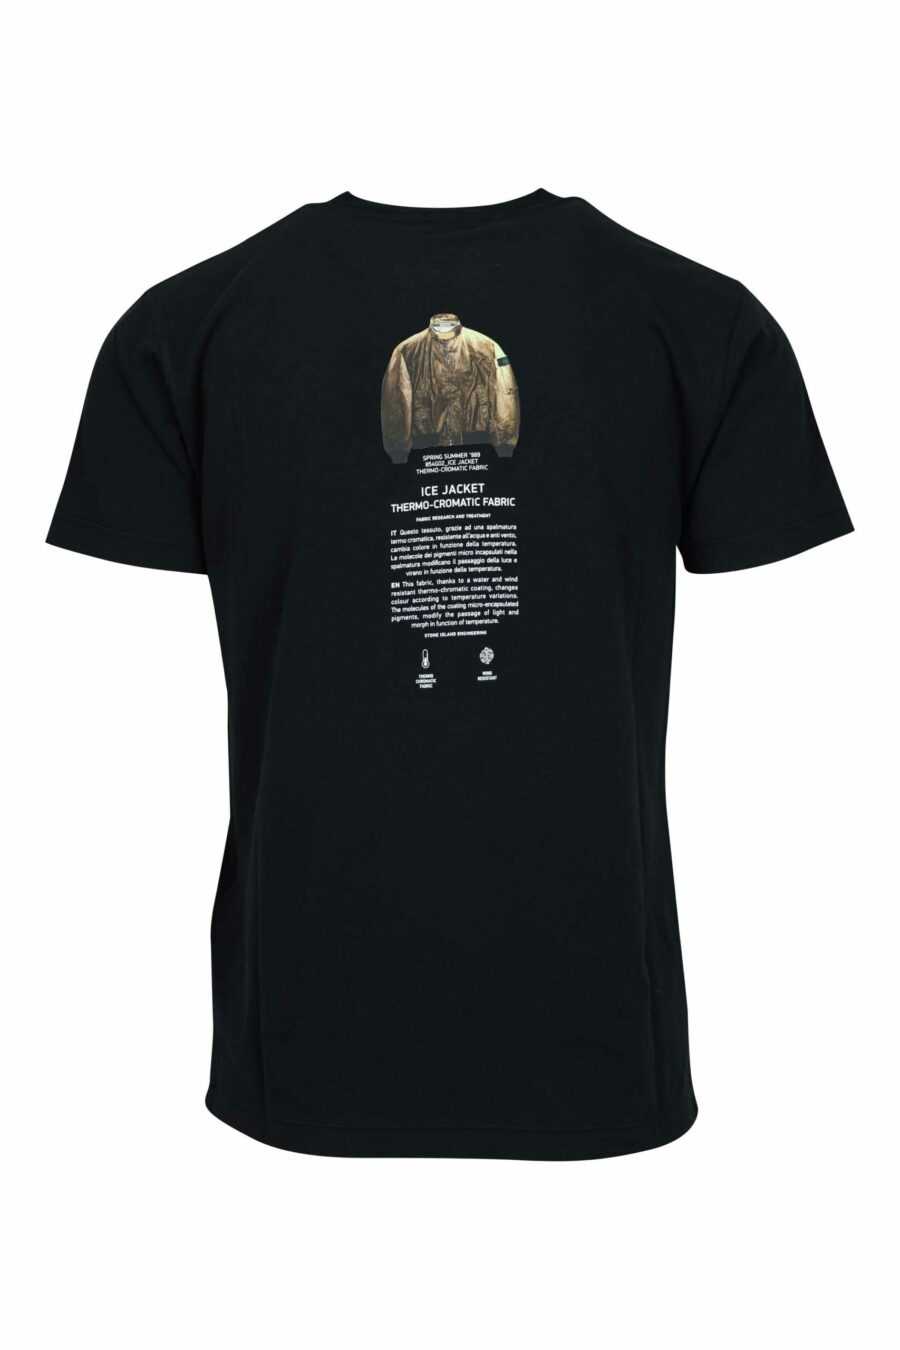 T-shirt preta com mini-logotipo "archivio" centrado - 8052572924798 1 à escala